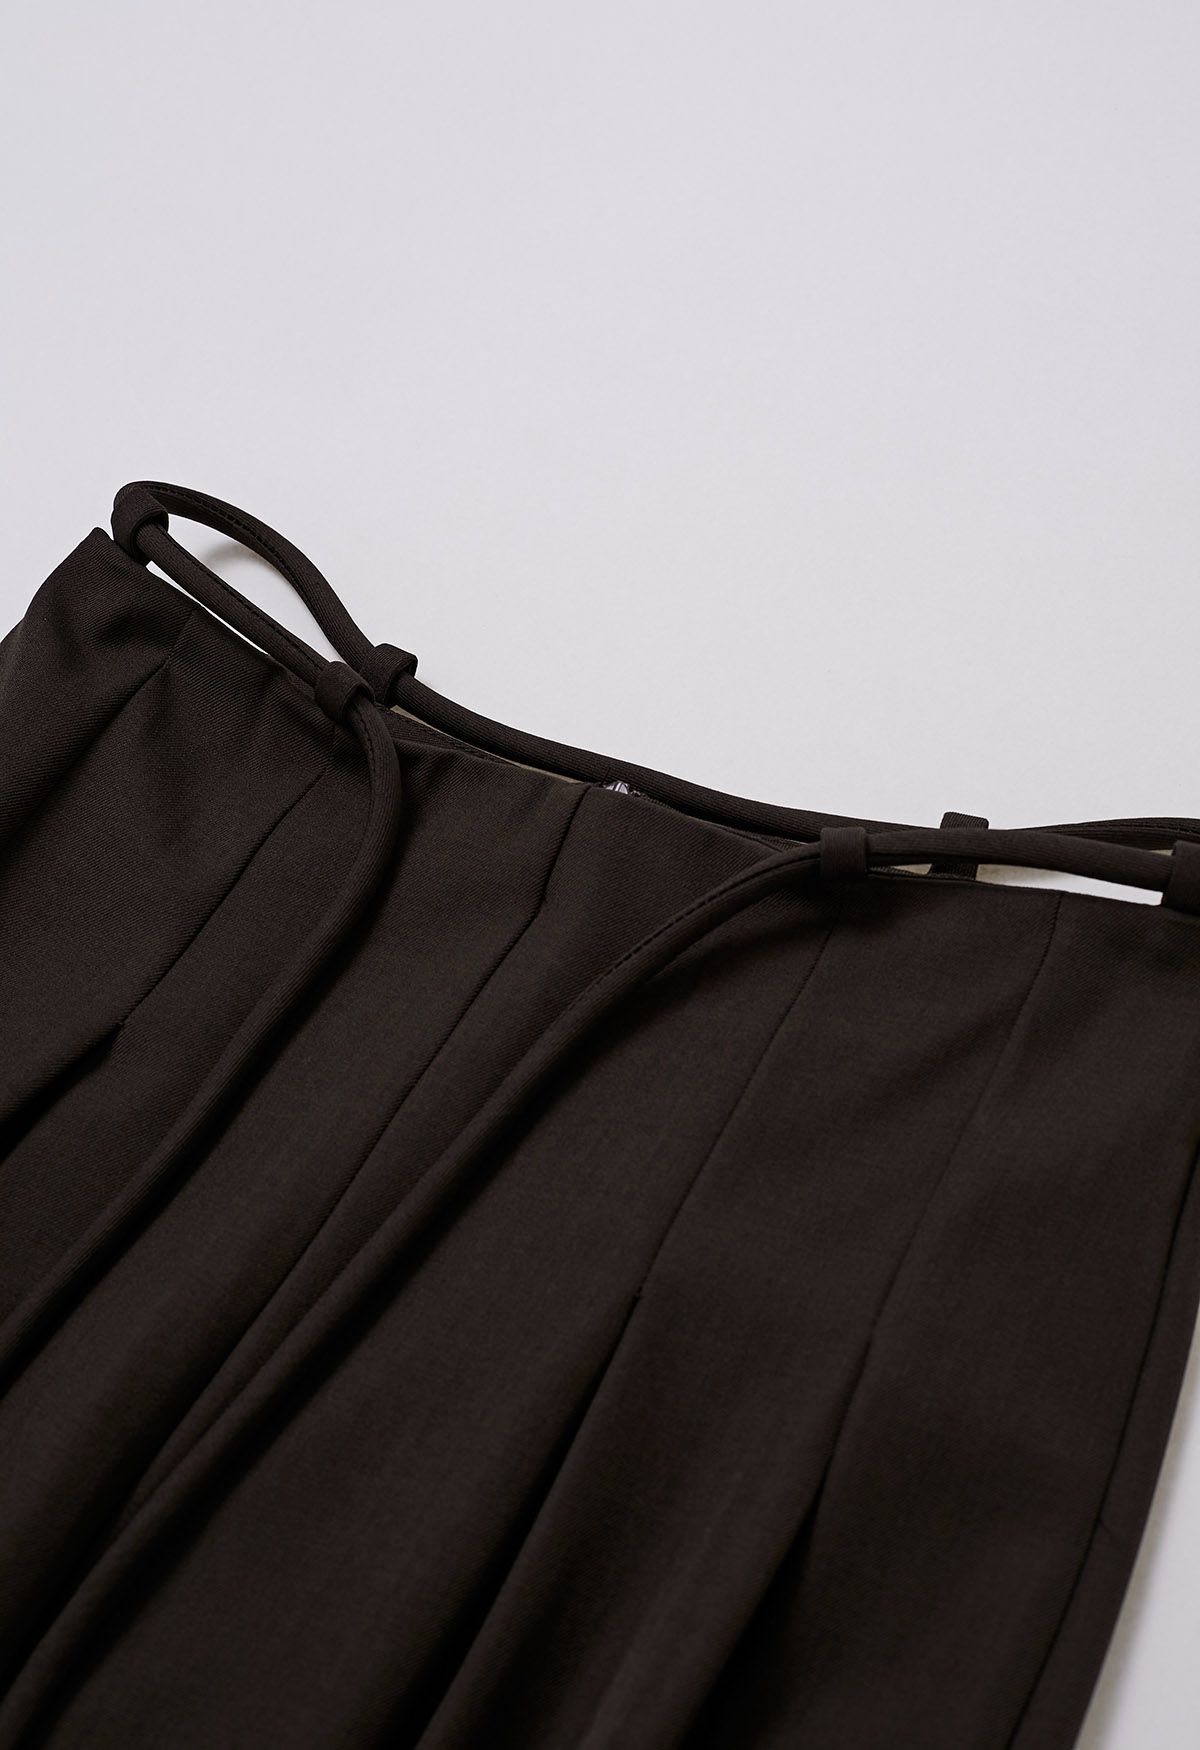 Pantalon large plissé tendance à taille nouée en marron